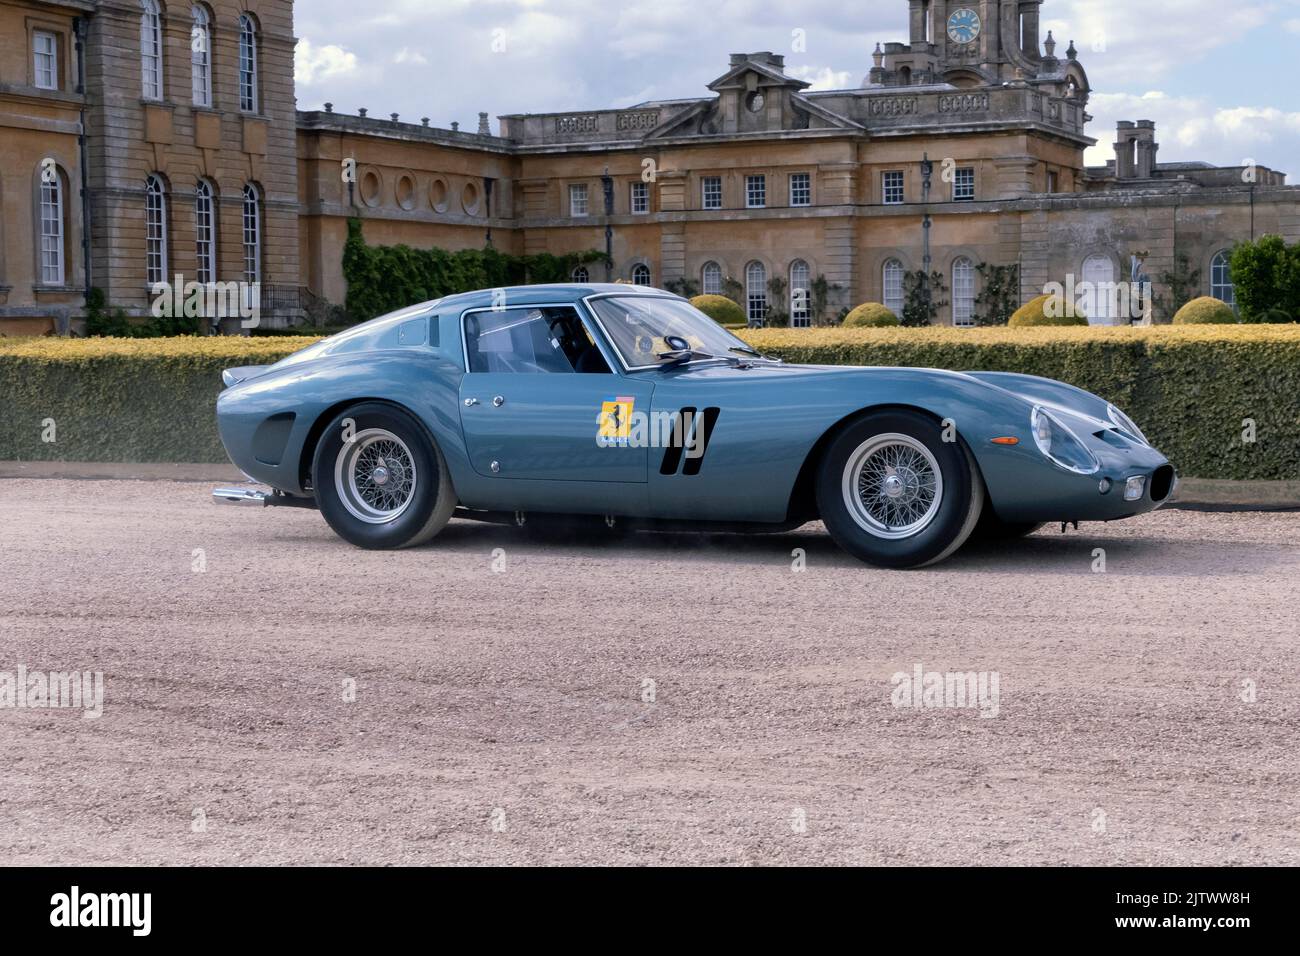 1962 Ferrari 250 GTO au salon Prive Concours au Blenheim Palace Oxfordshire Royaume-Uni Banque D'Images